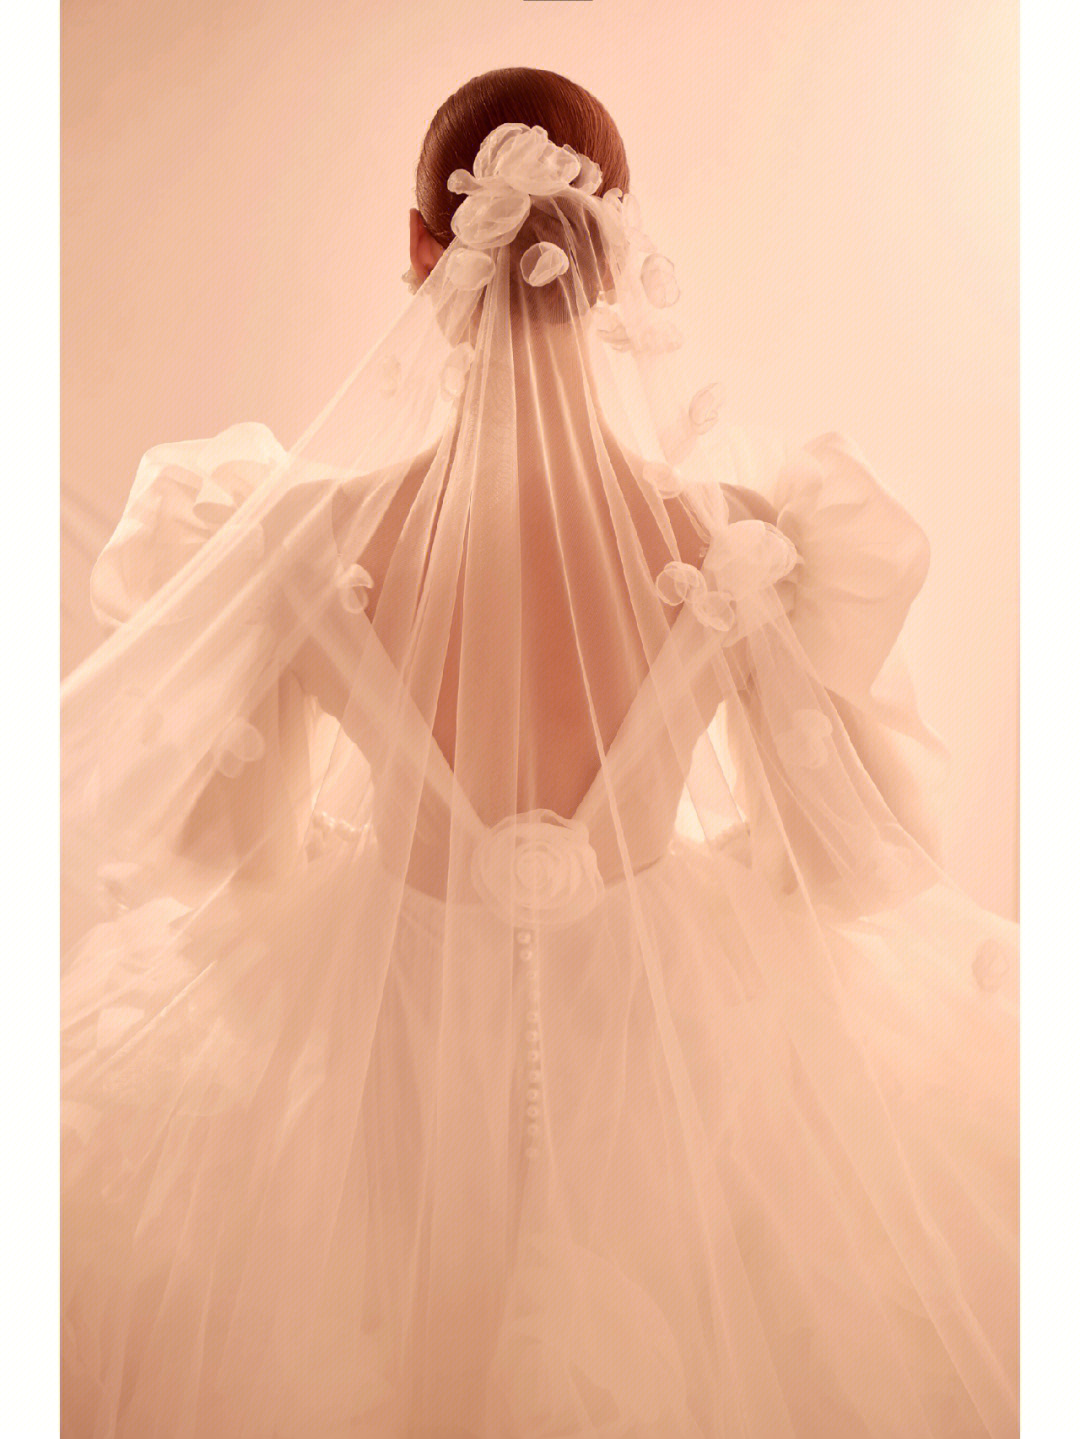 把婚纱照拍成了柔柔的奶粉色,大朵山茶花和深v婚纱,藏住下半身肉肉